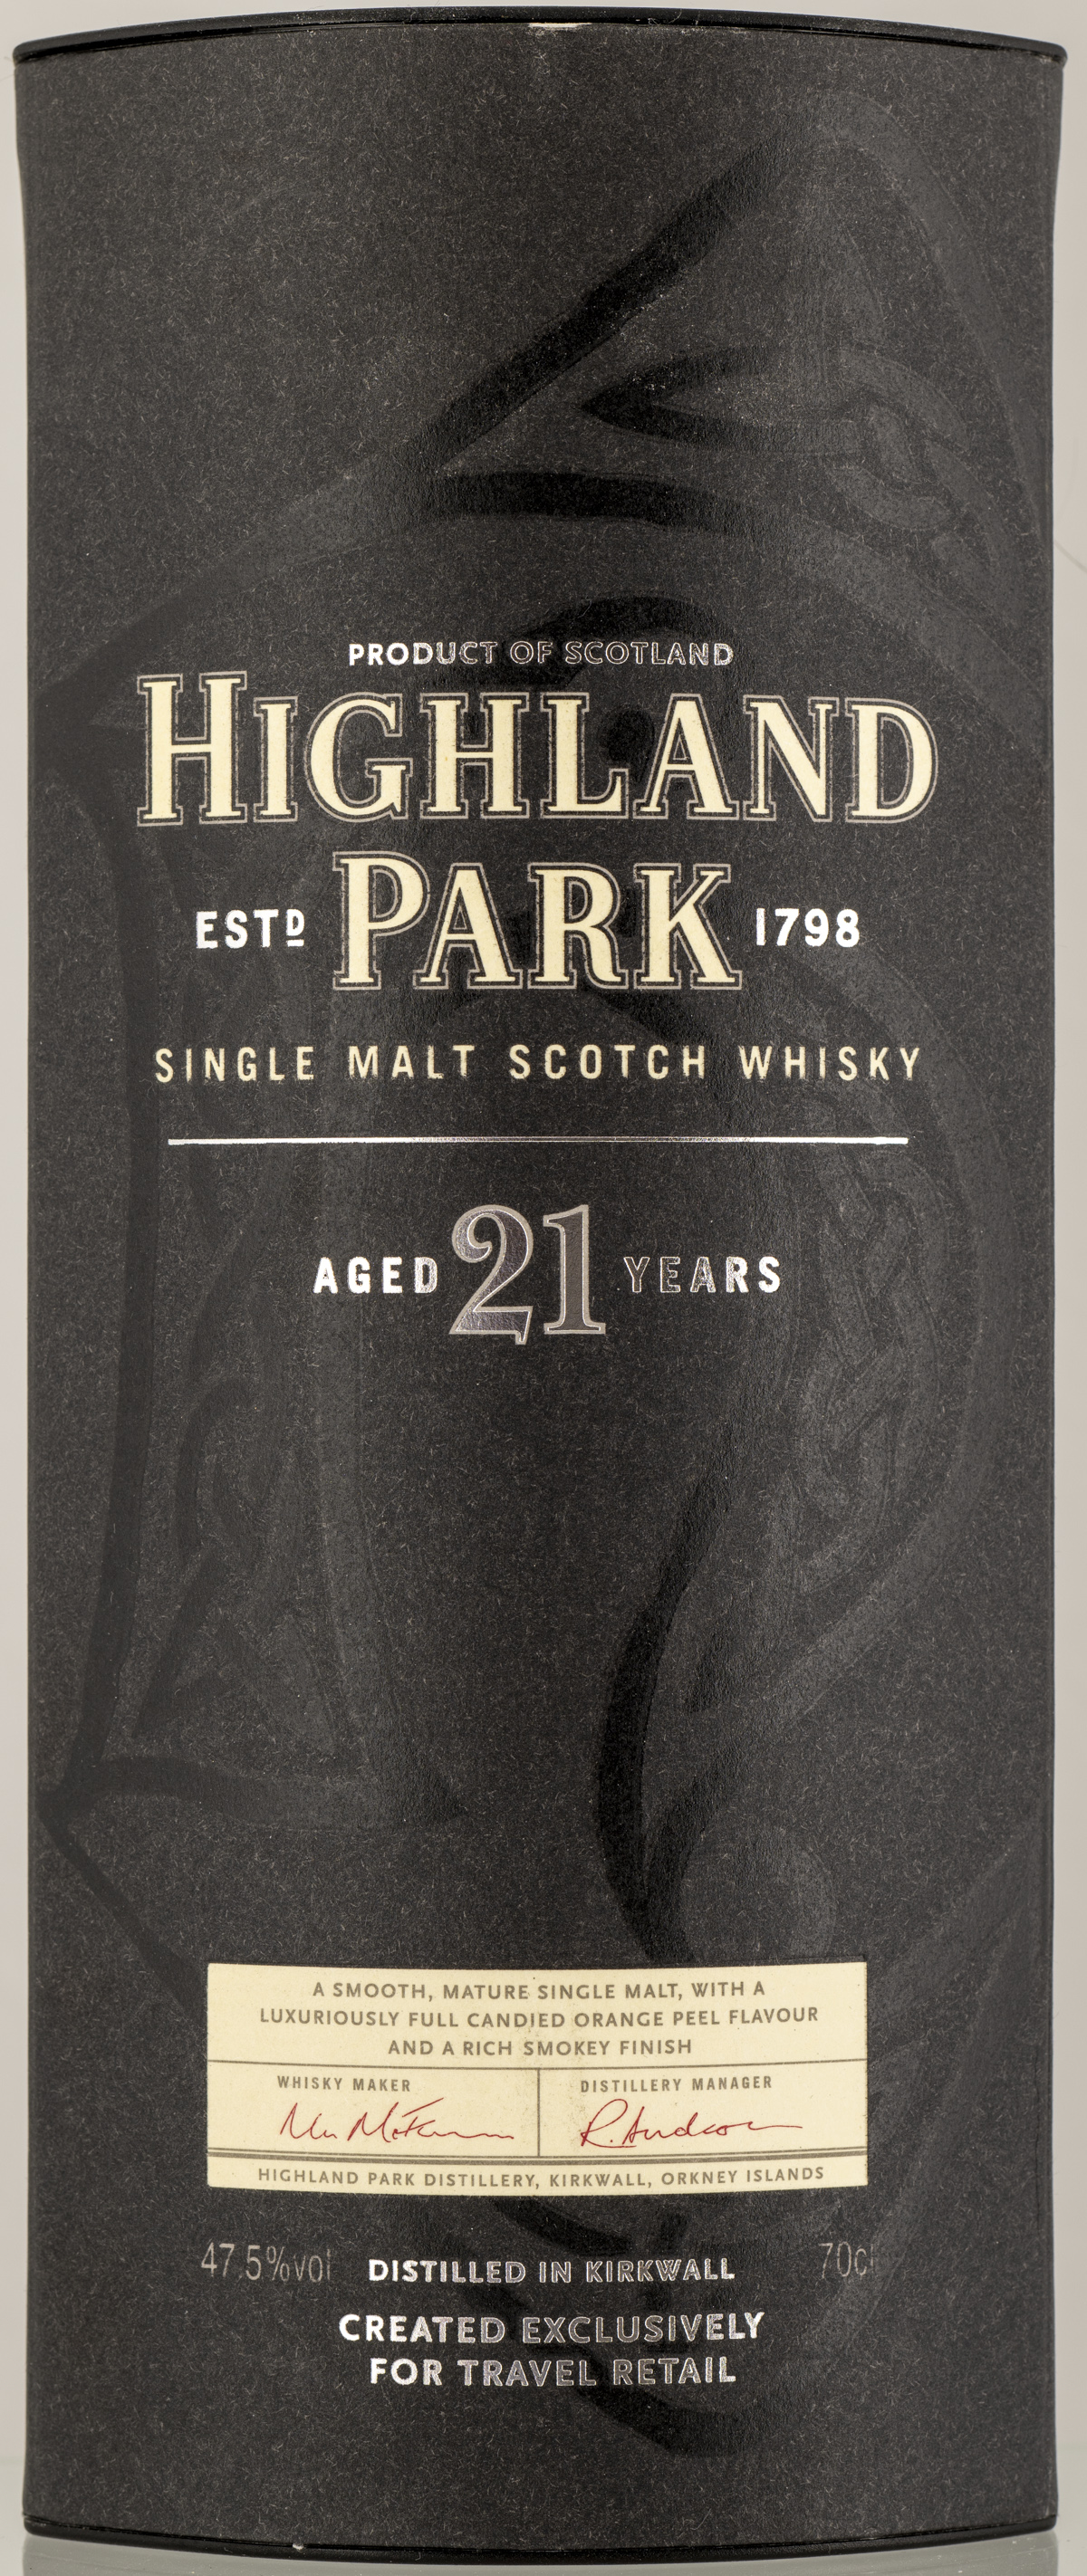 Billede: PHC_2586 - Highland Park 21 (1st edition) - tube front.jpg